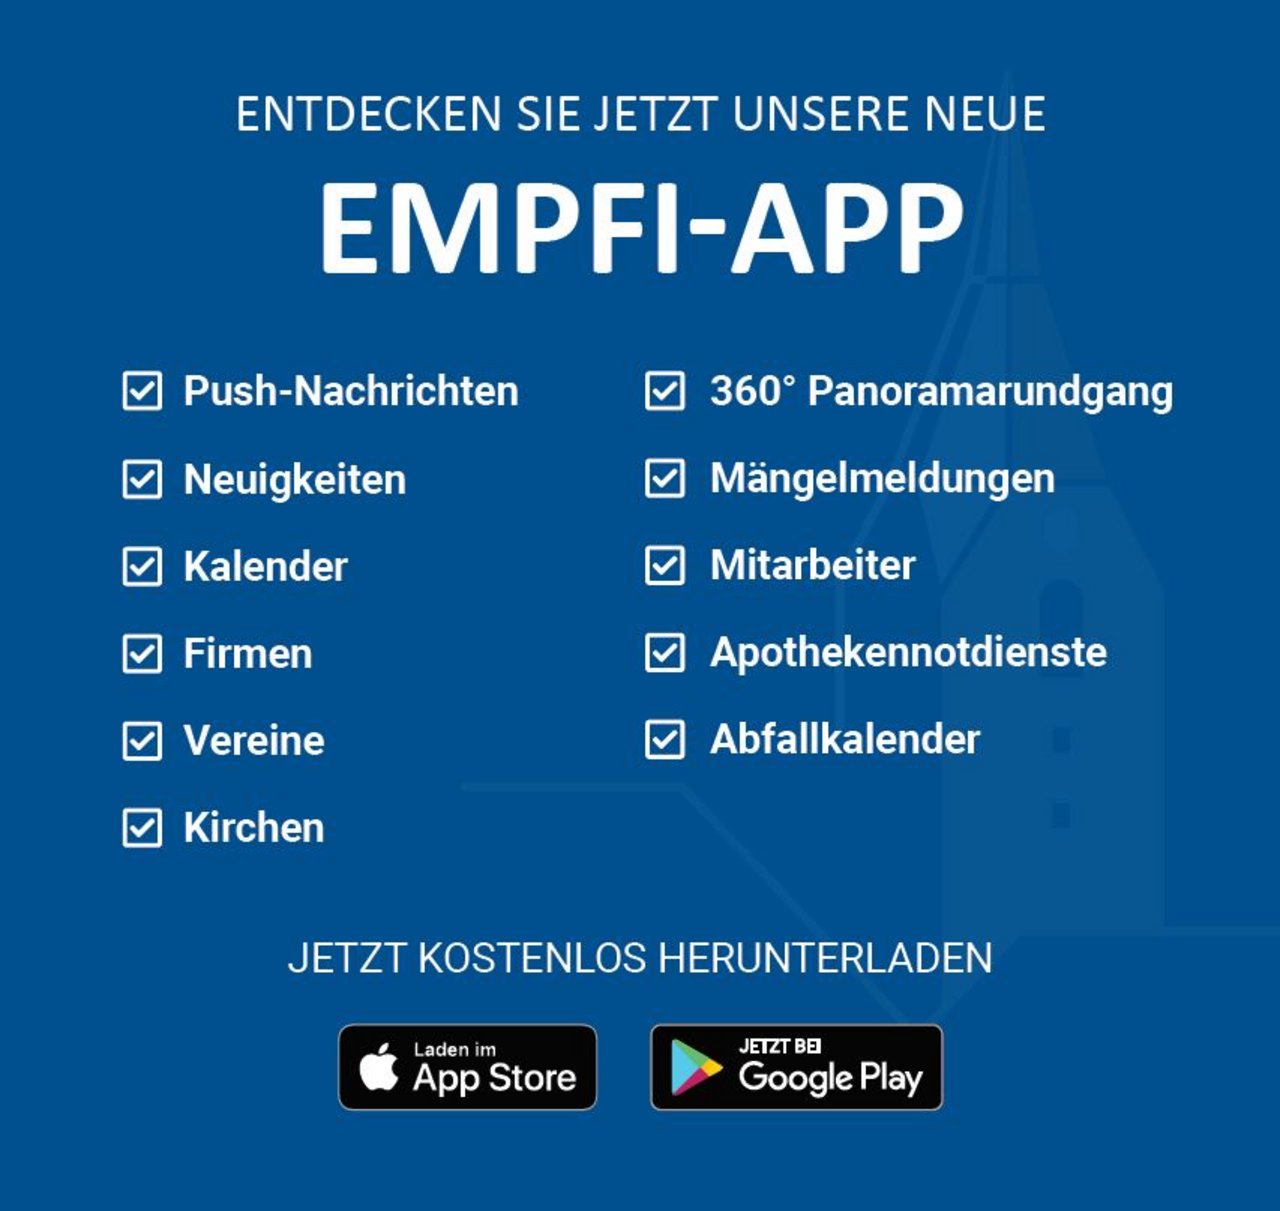 Inhalte Empfi-App